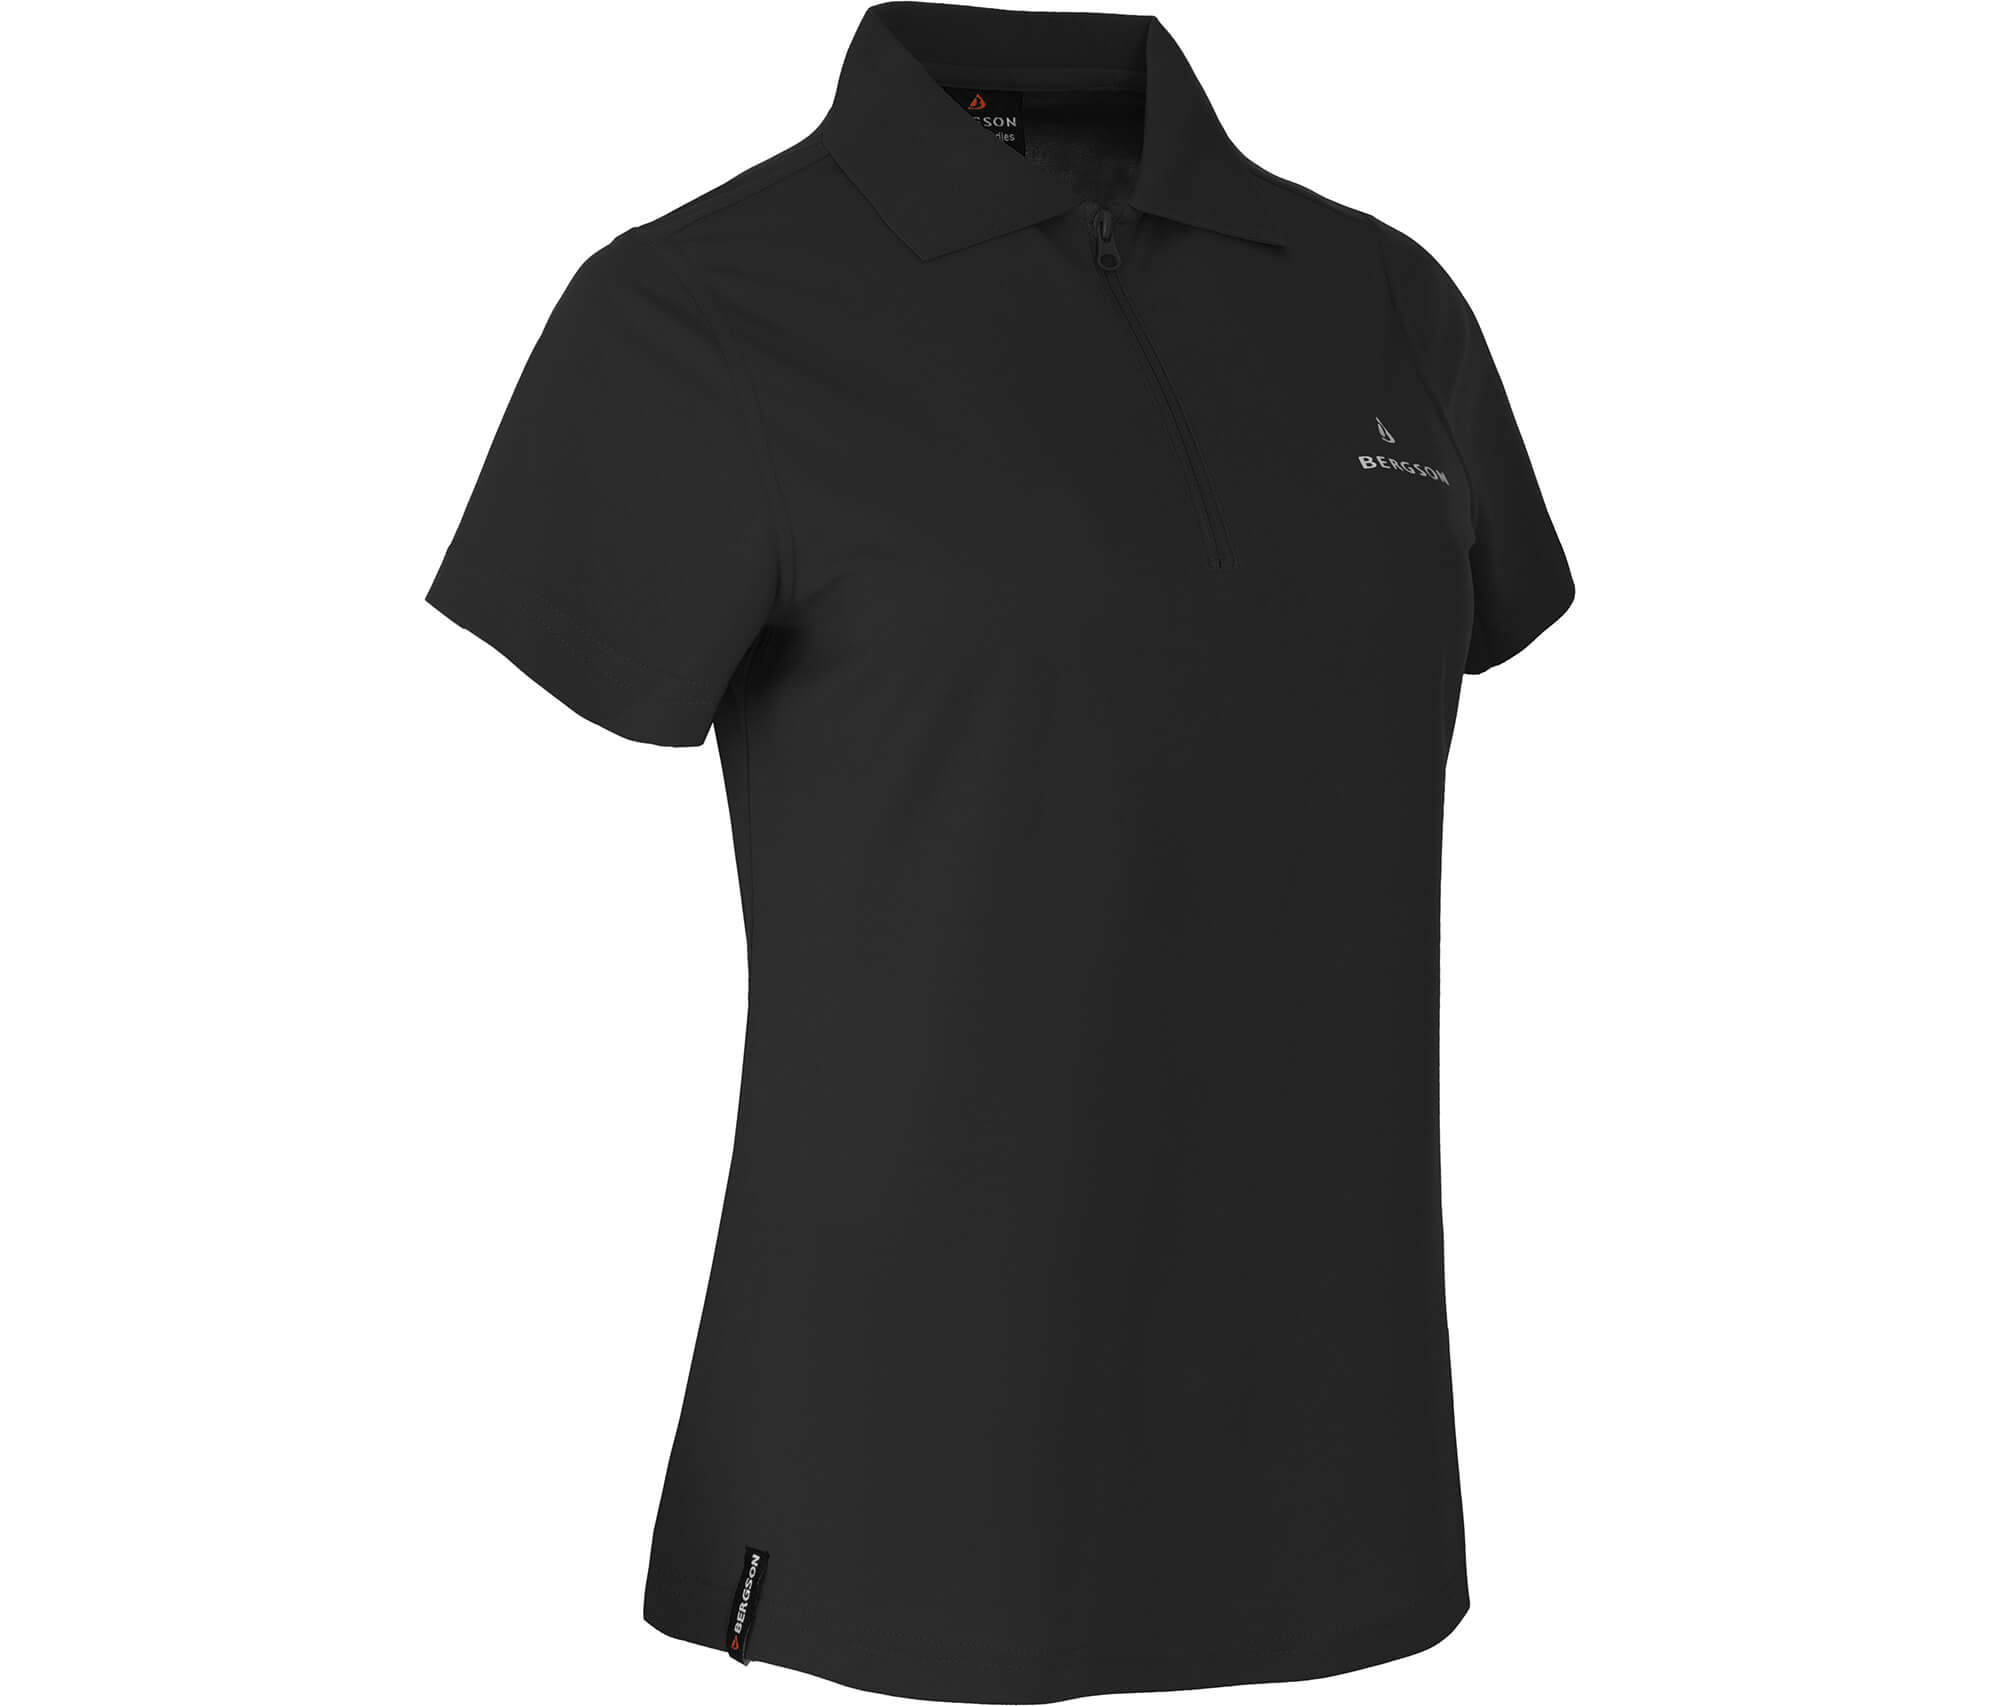 Bergson SHONA | Damen Funktions Poloshirt, Pique, schnelltrocknend -  schwarz --> Sehr gute Outdoorbekleidung &